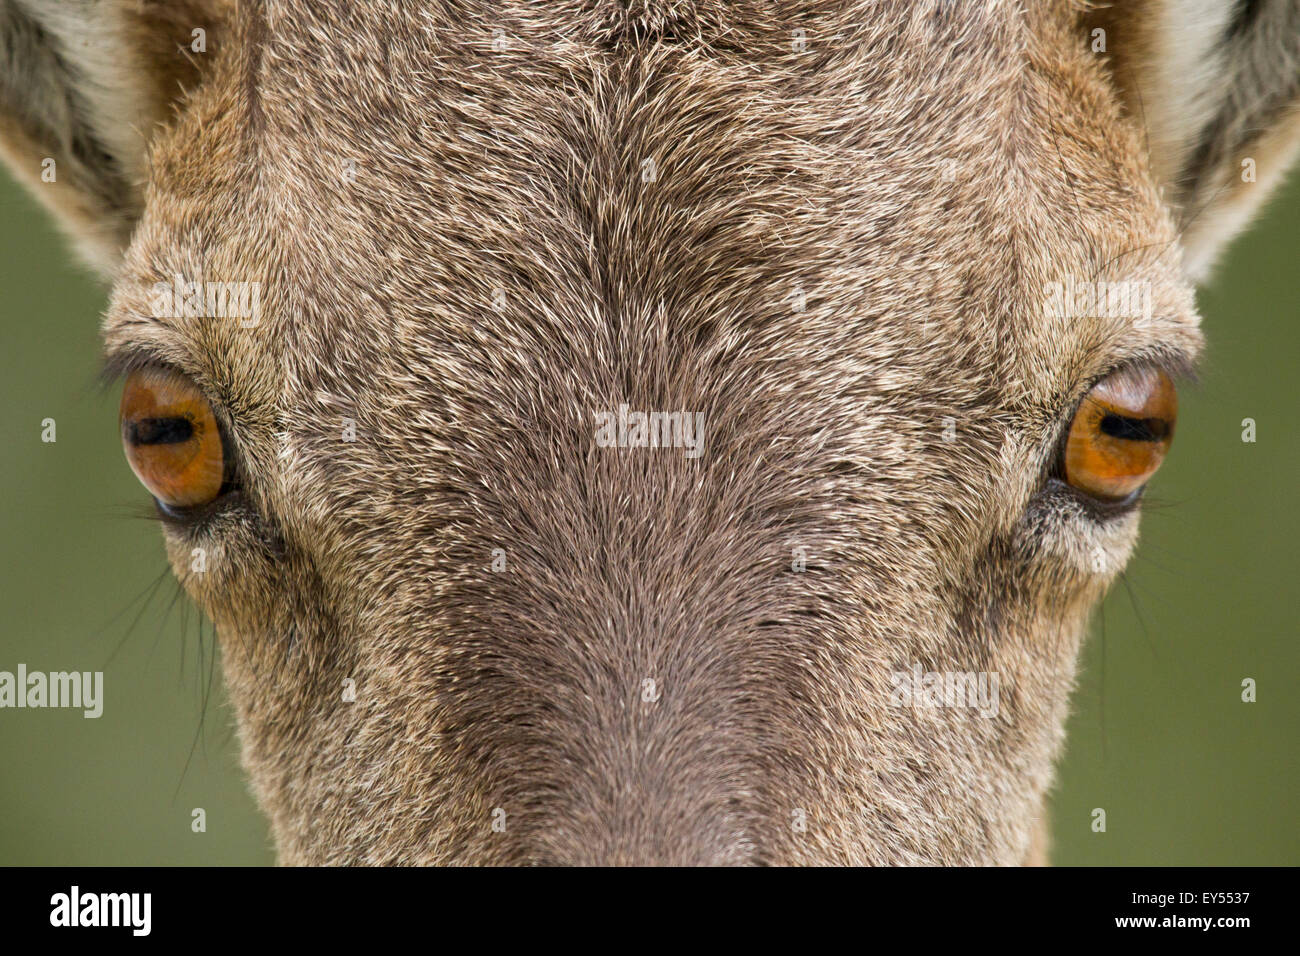 Glance of Female Ibex - Vanoise Alps France Stock Photo